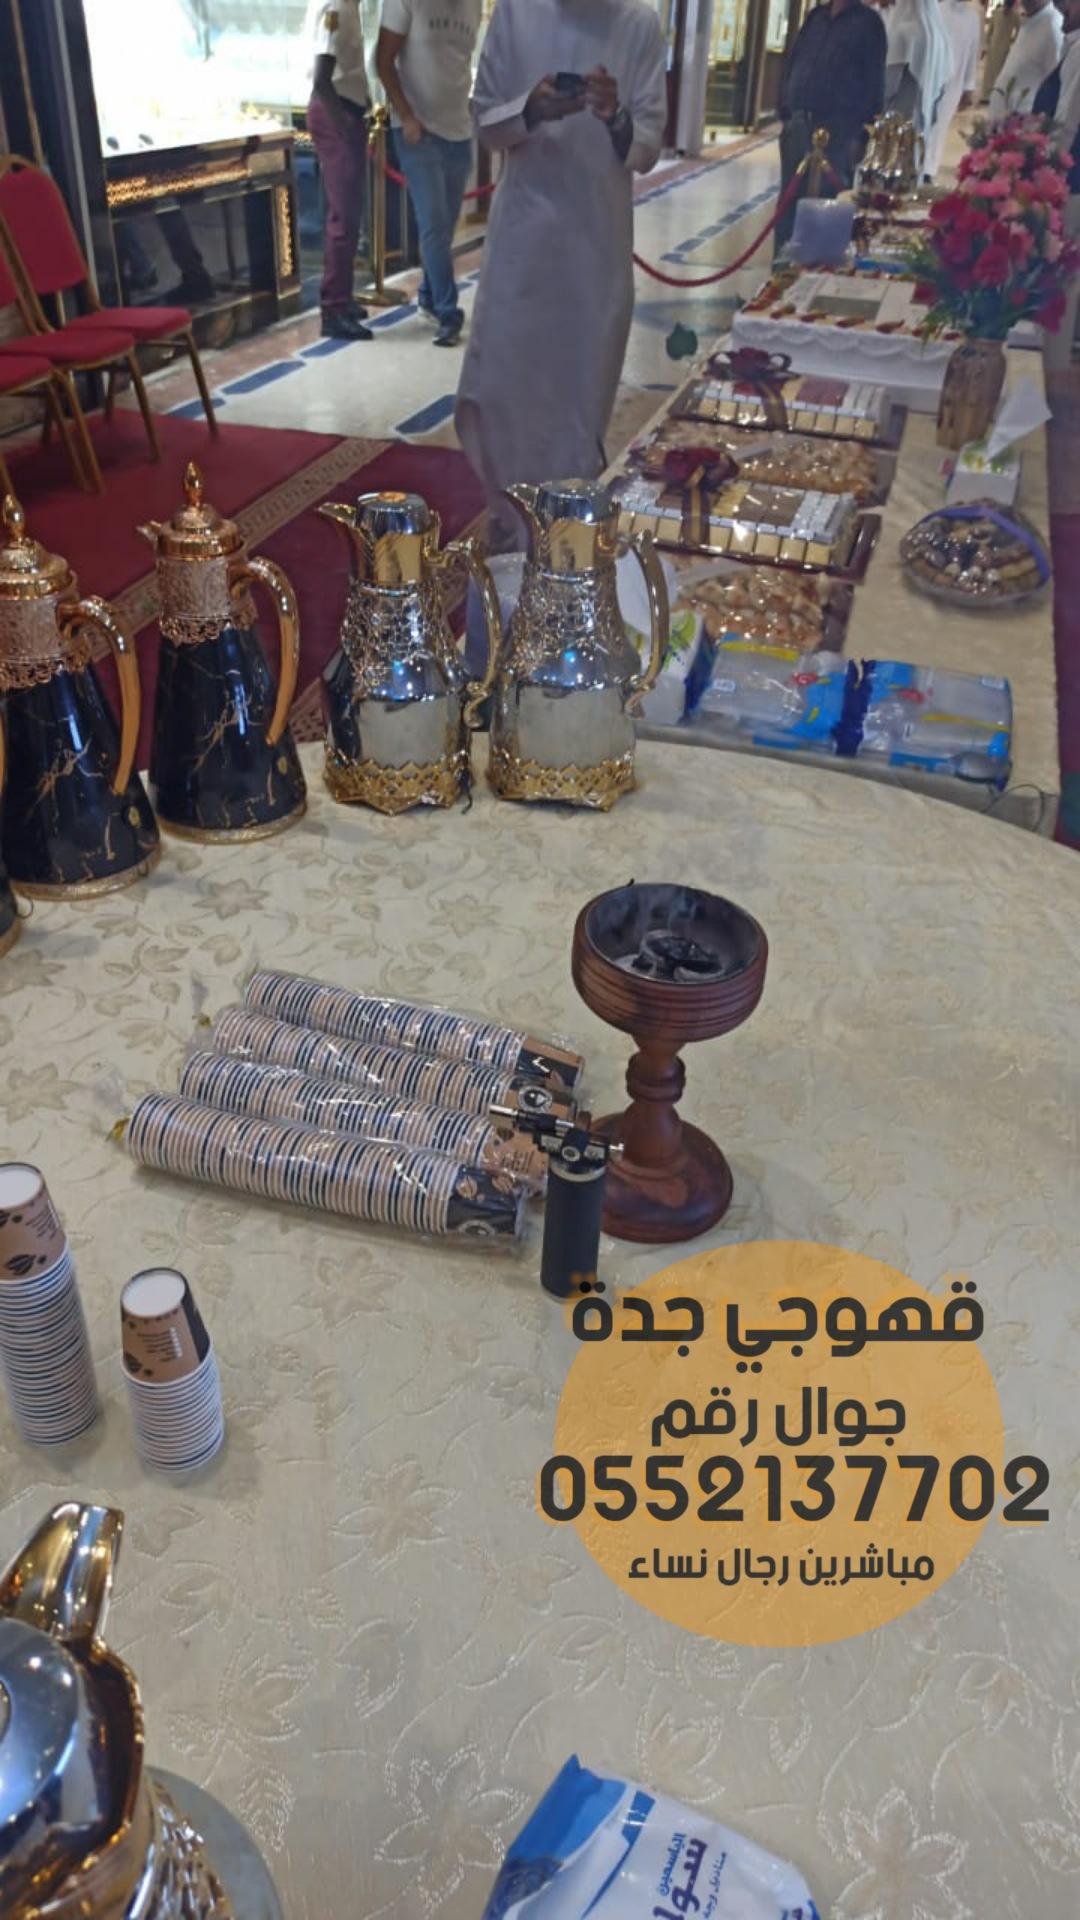 صبابين قهوة و مباشرات ضيافه في جدة,0552137702 580131069